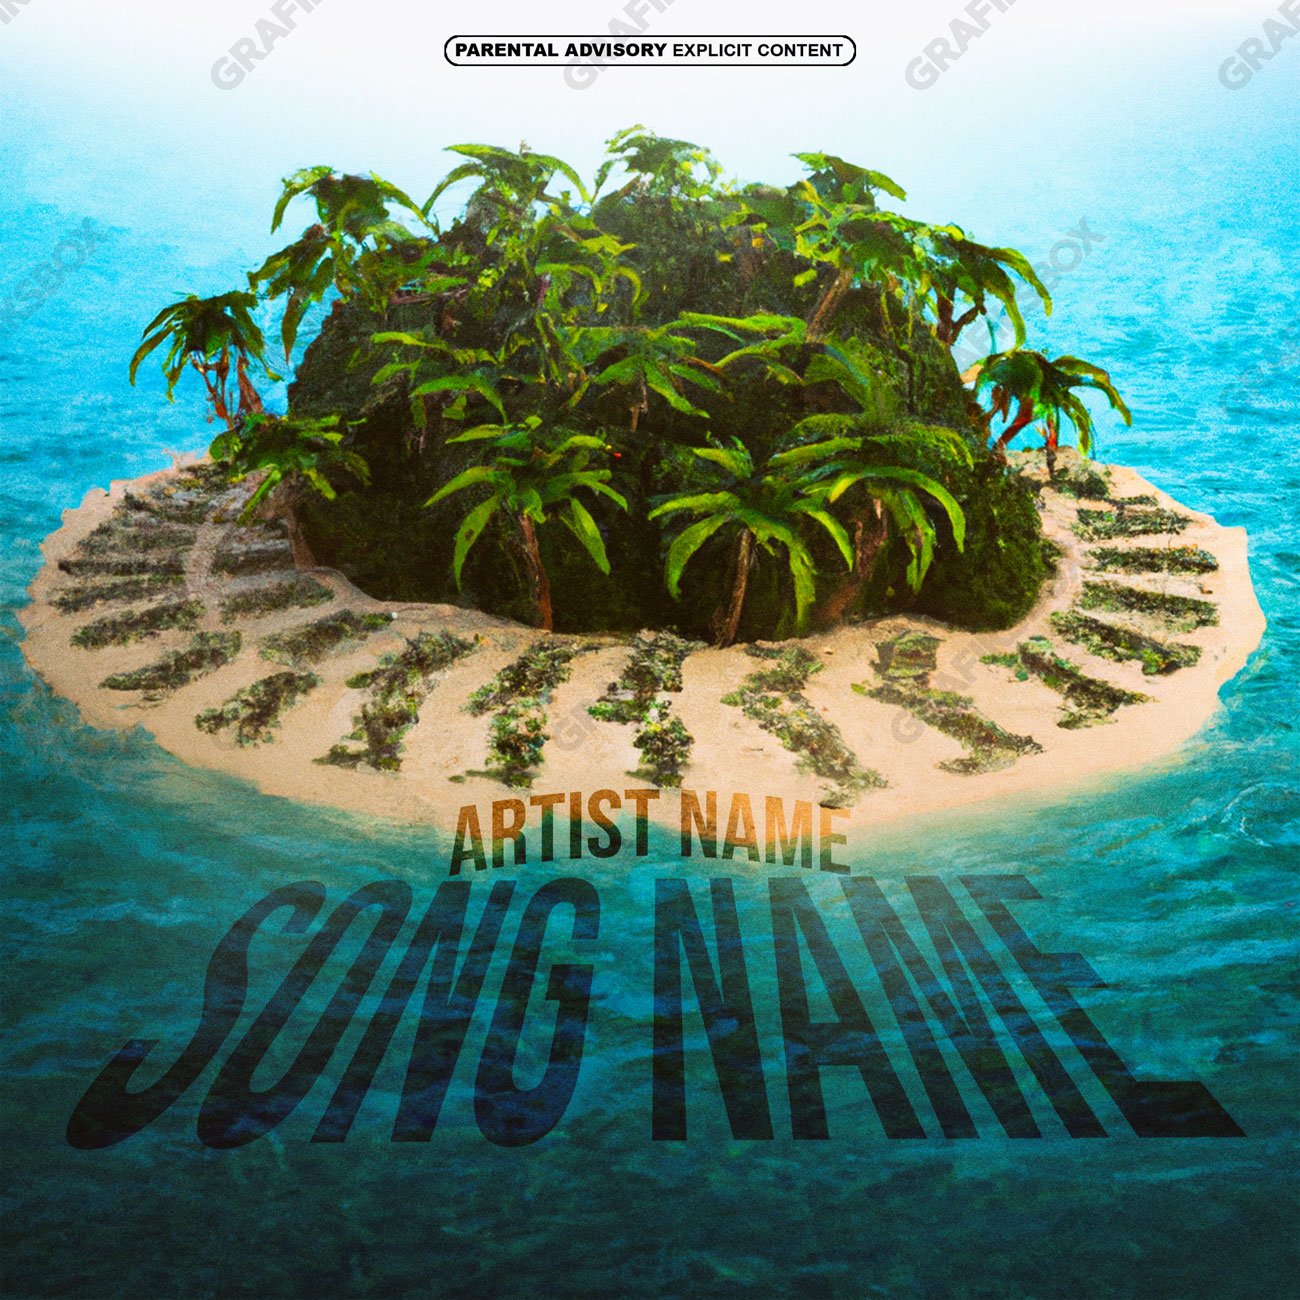 Private island premade cover art